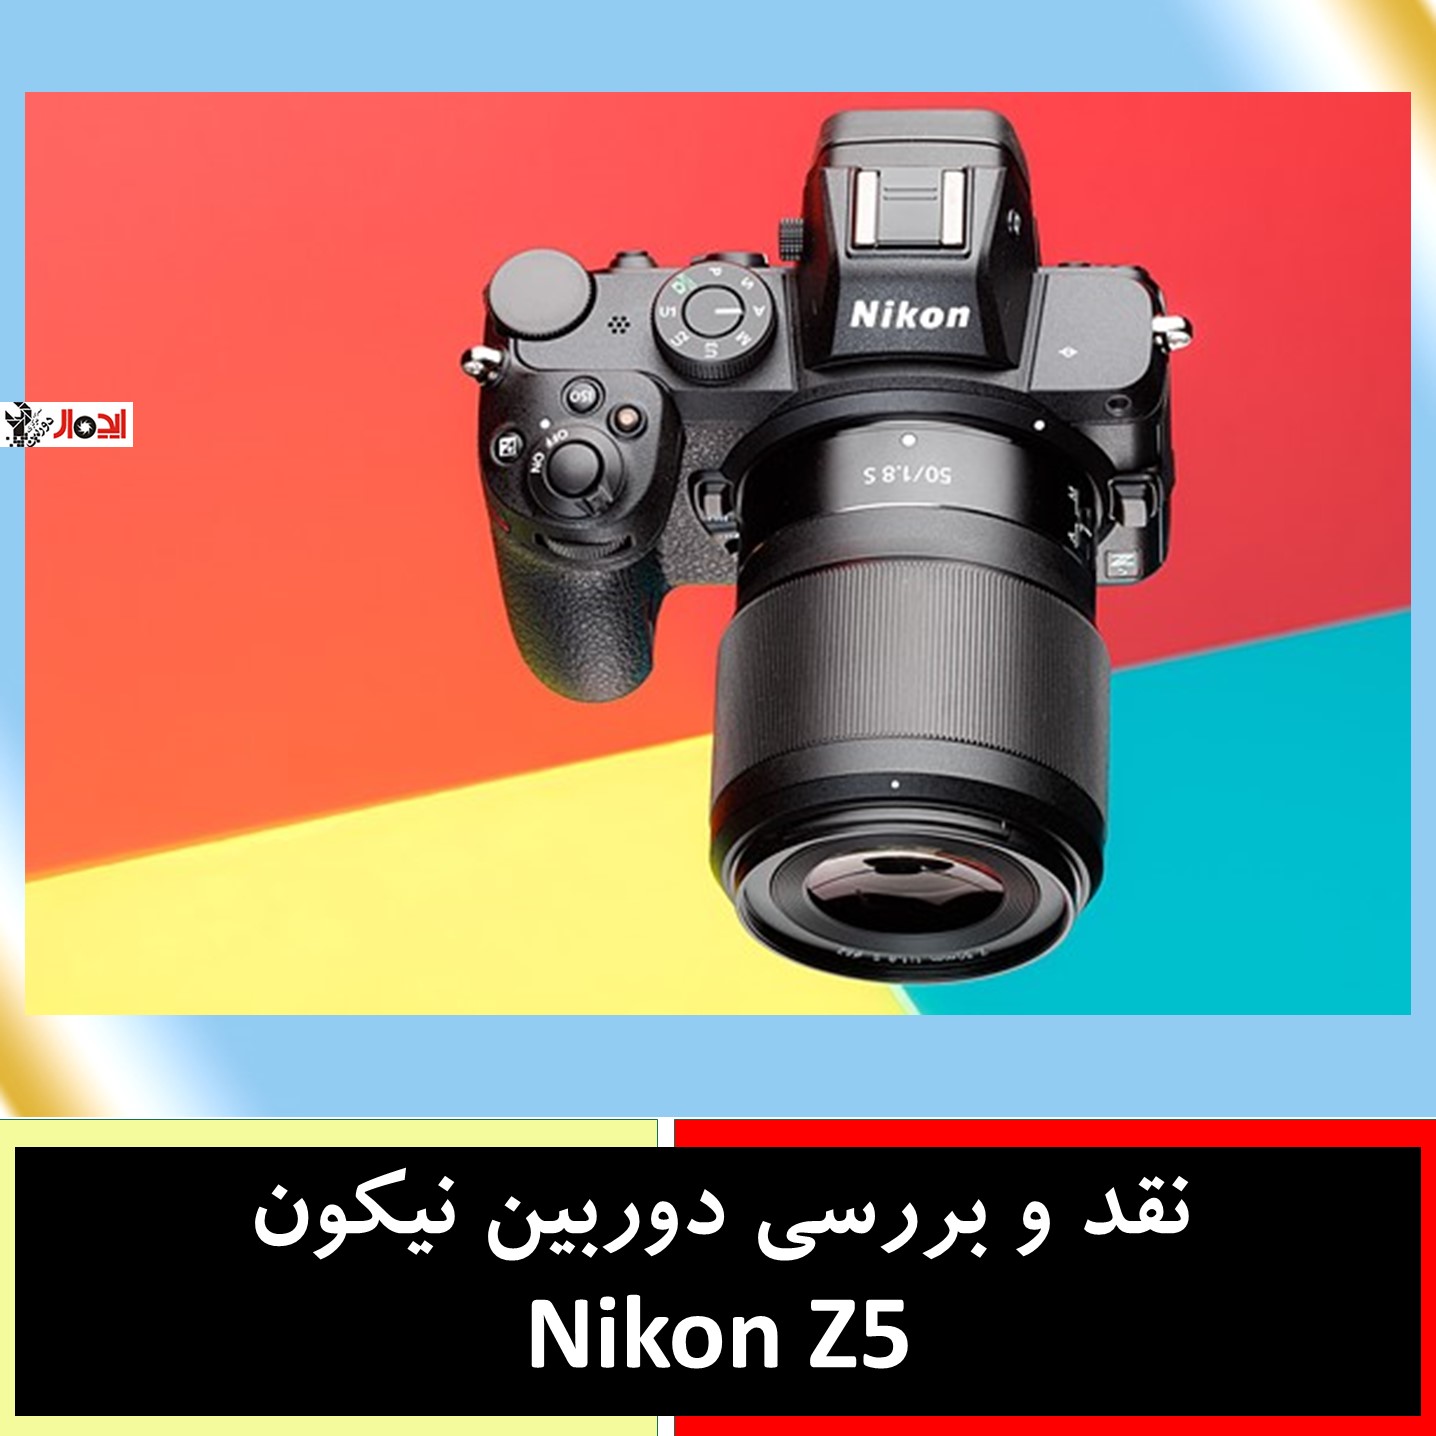 نقد و بررسی دوربین نیکون Nikon Z5